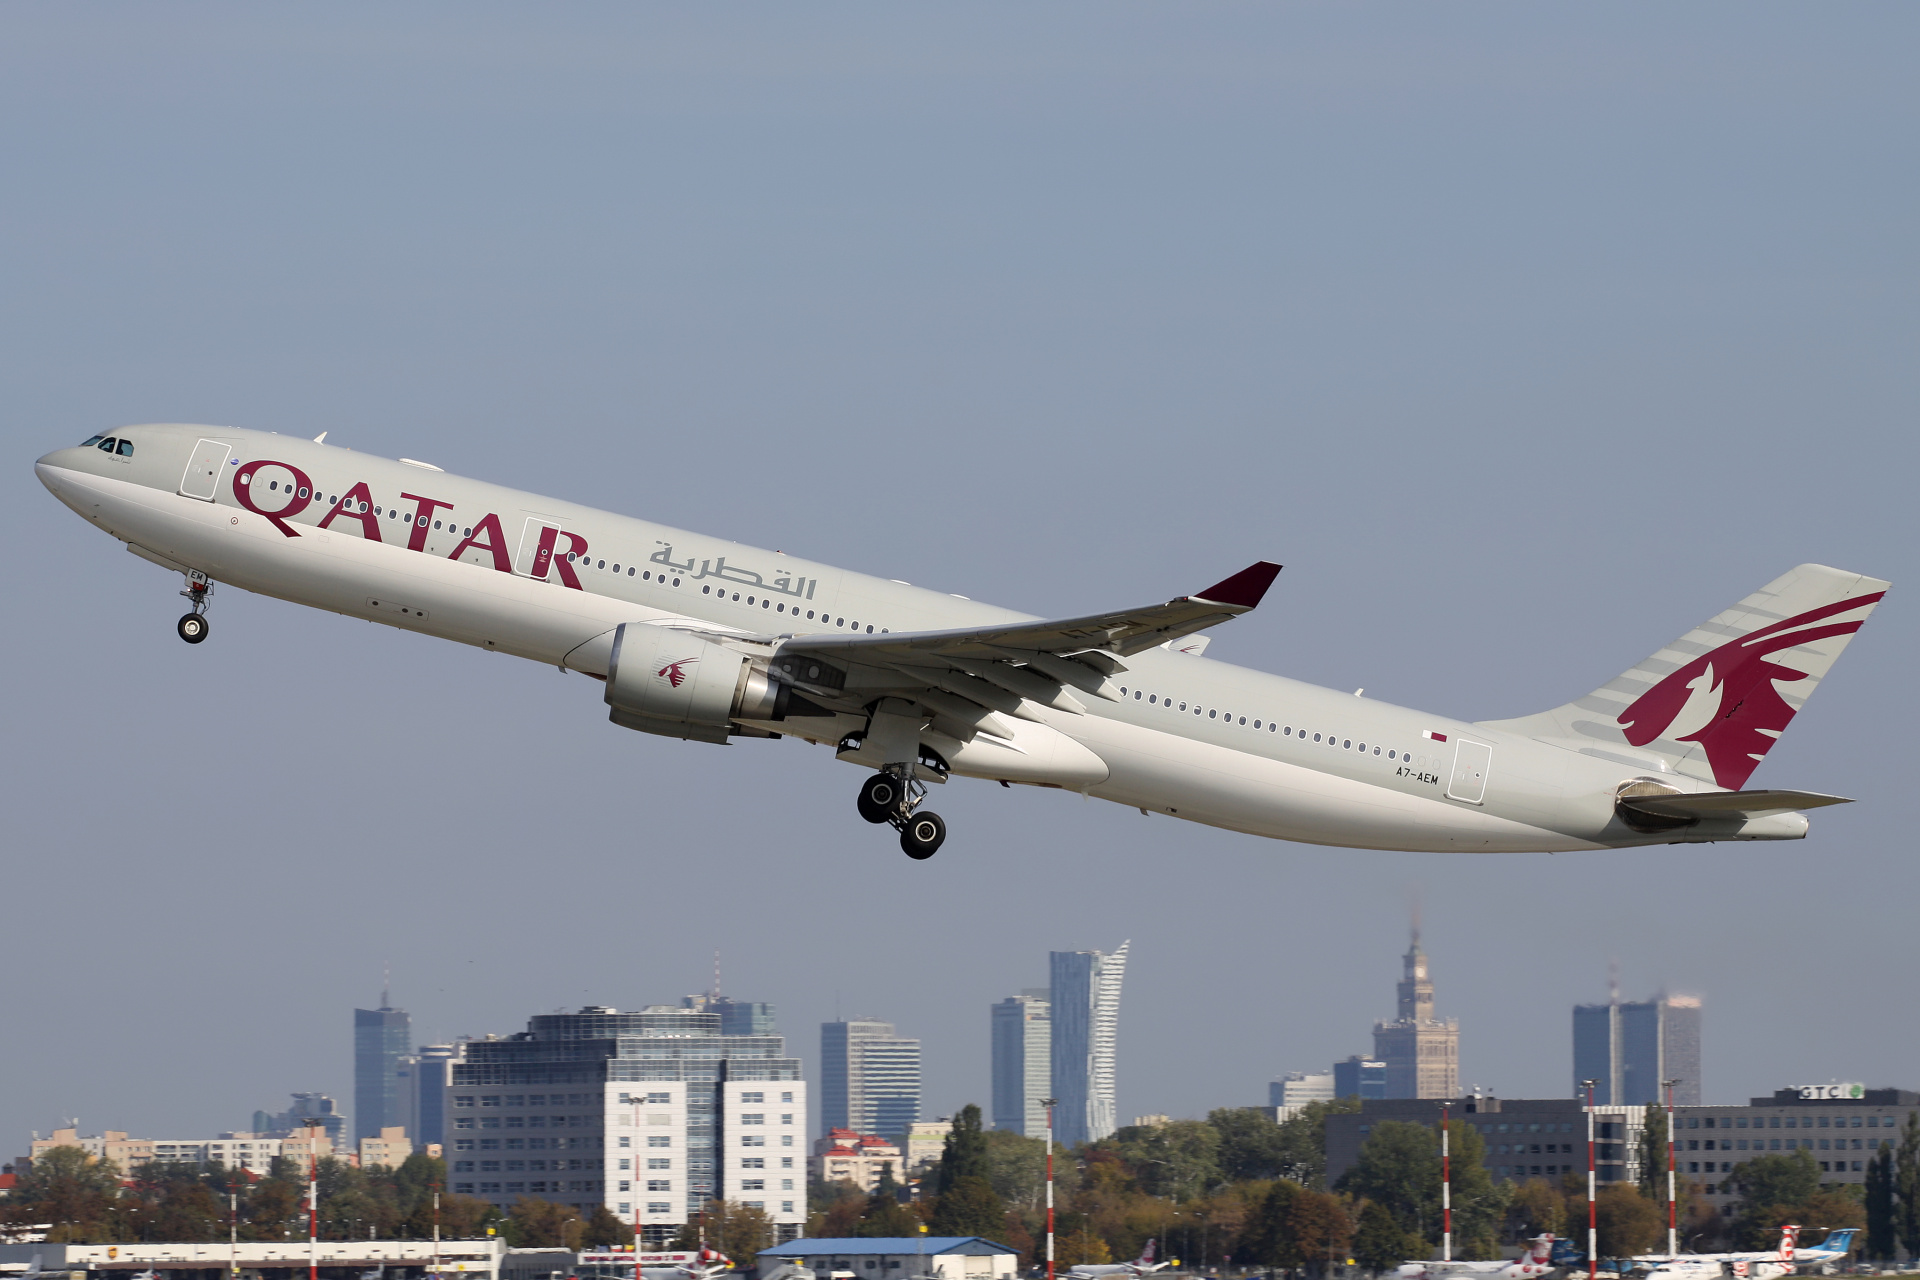 A7-AEM, Qatar Airways (Aircraft » EPWA Spotting » Airbus A330-300 » Qatar Airways)